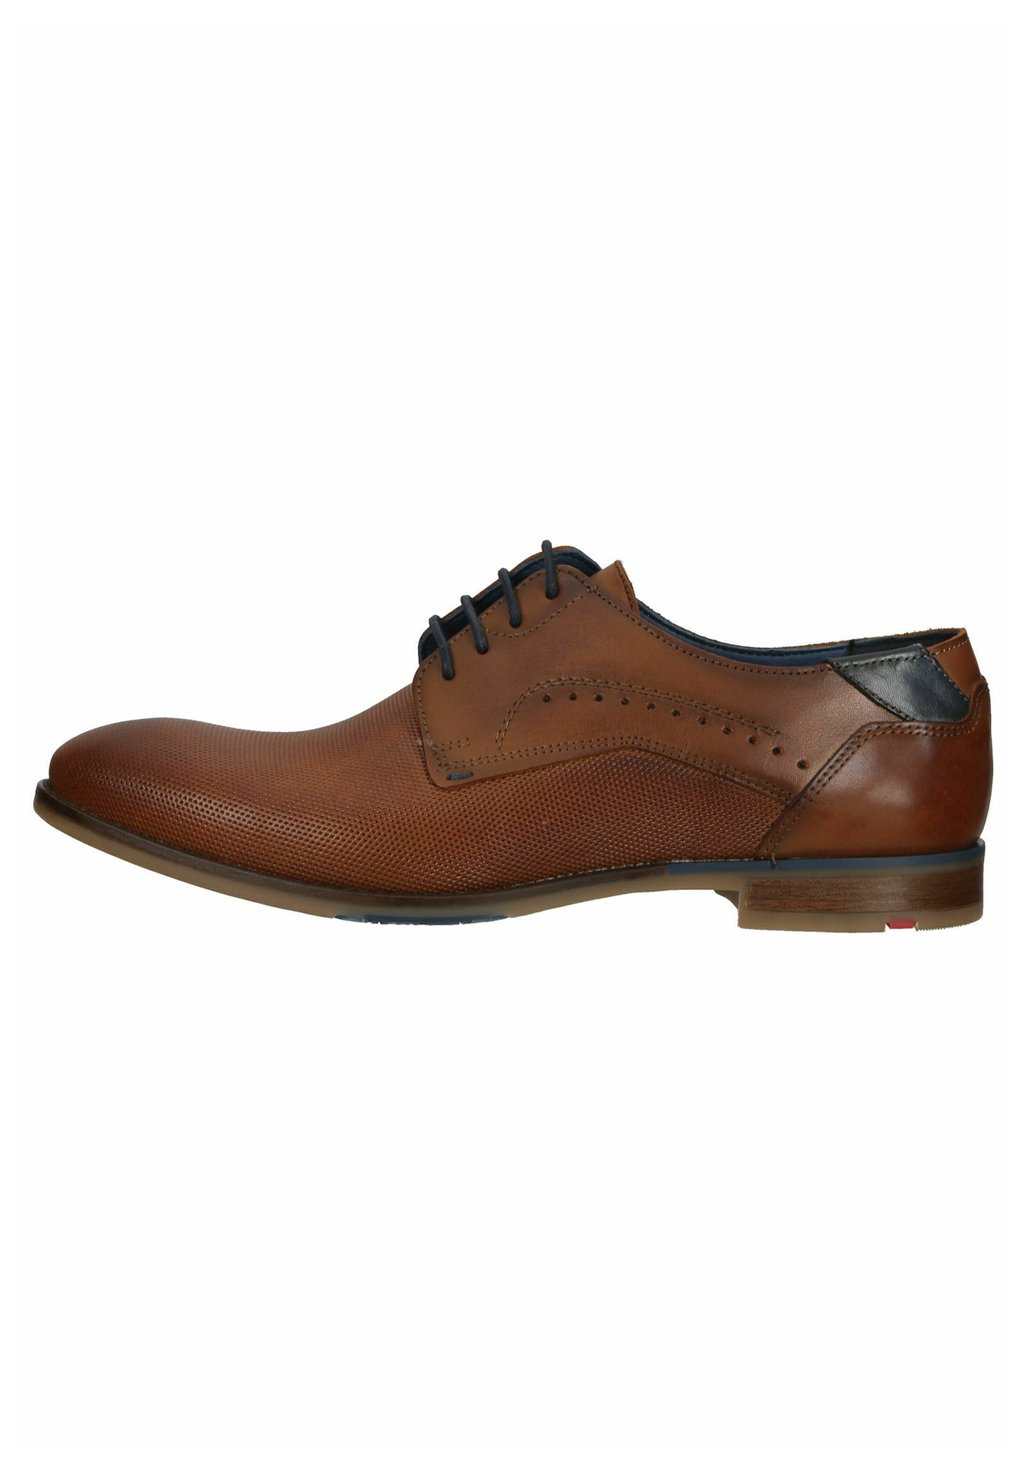 Элегантные туфли на шнуровке Business Lloyd, цвет cognac элегантные туфли на шнуровке faro aldo цвет cognac